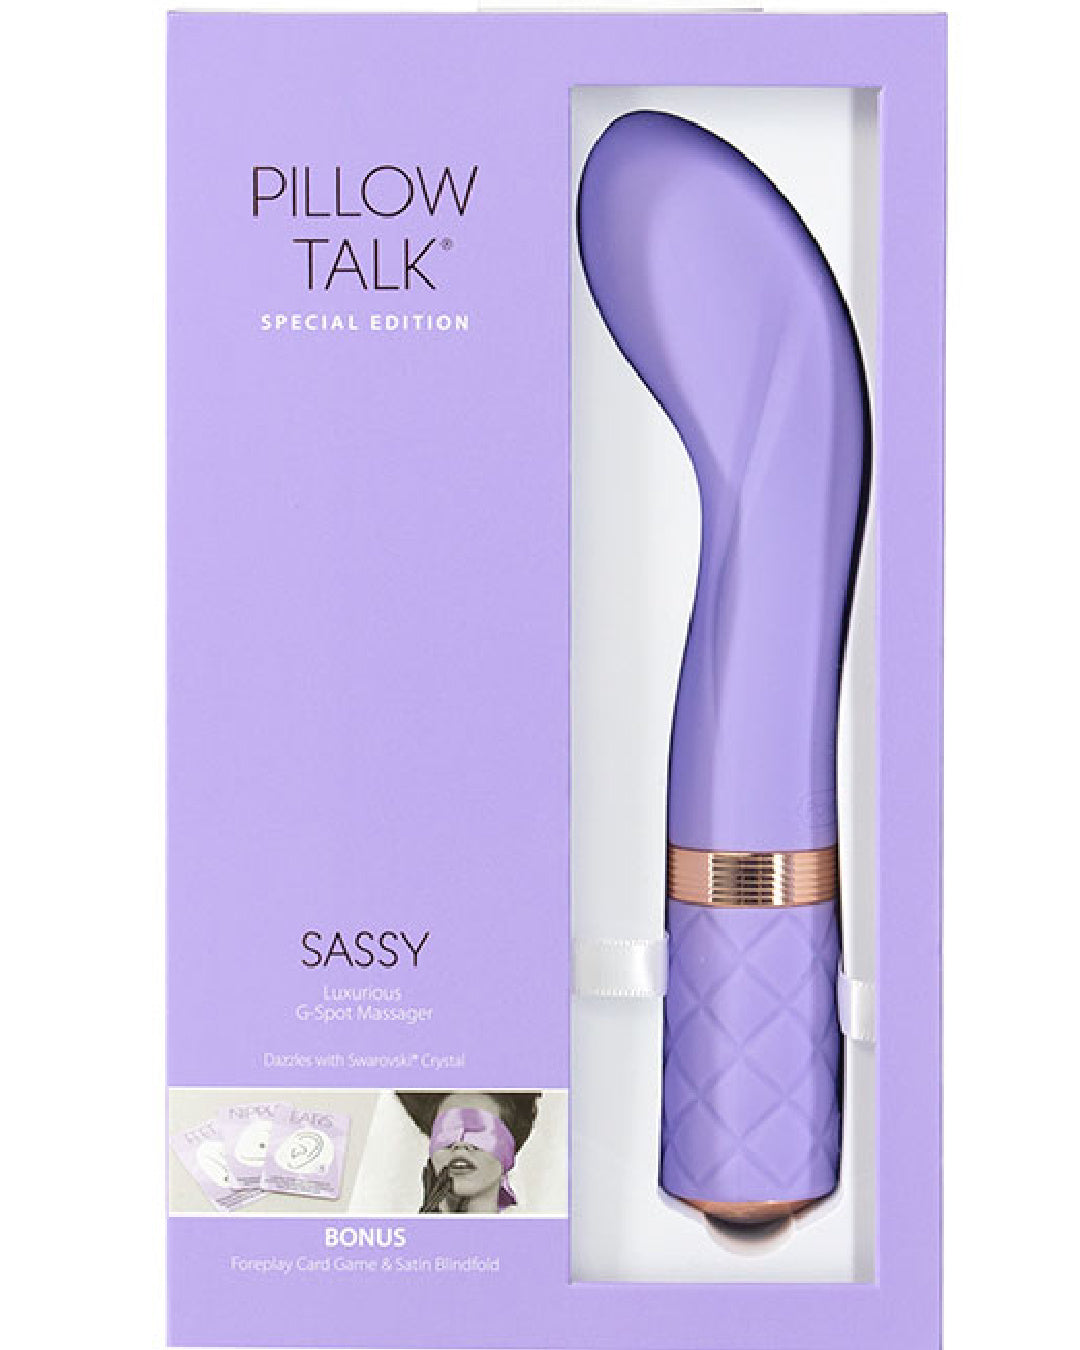 Pillow Talk Sassy G-spot Vibrator - Purple product box 